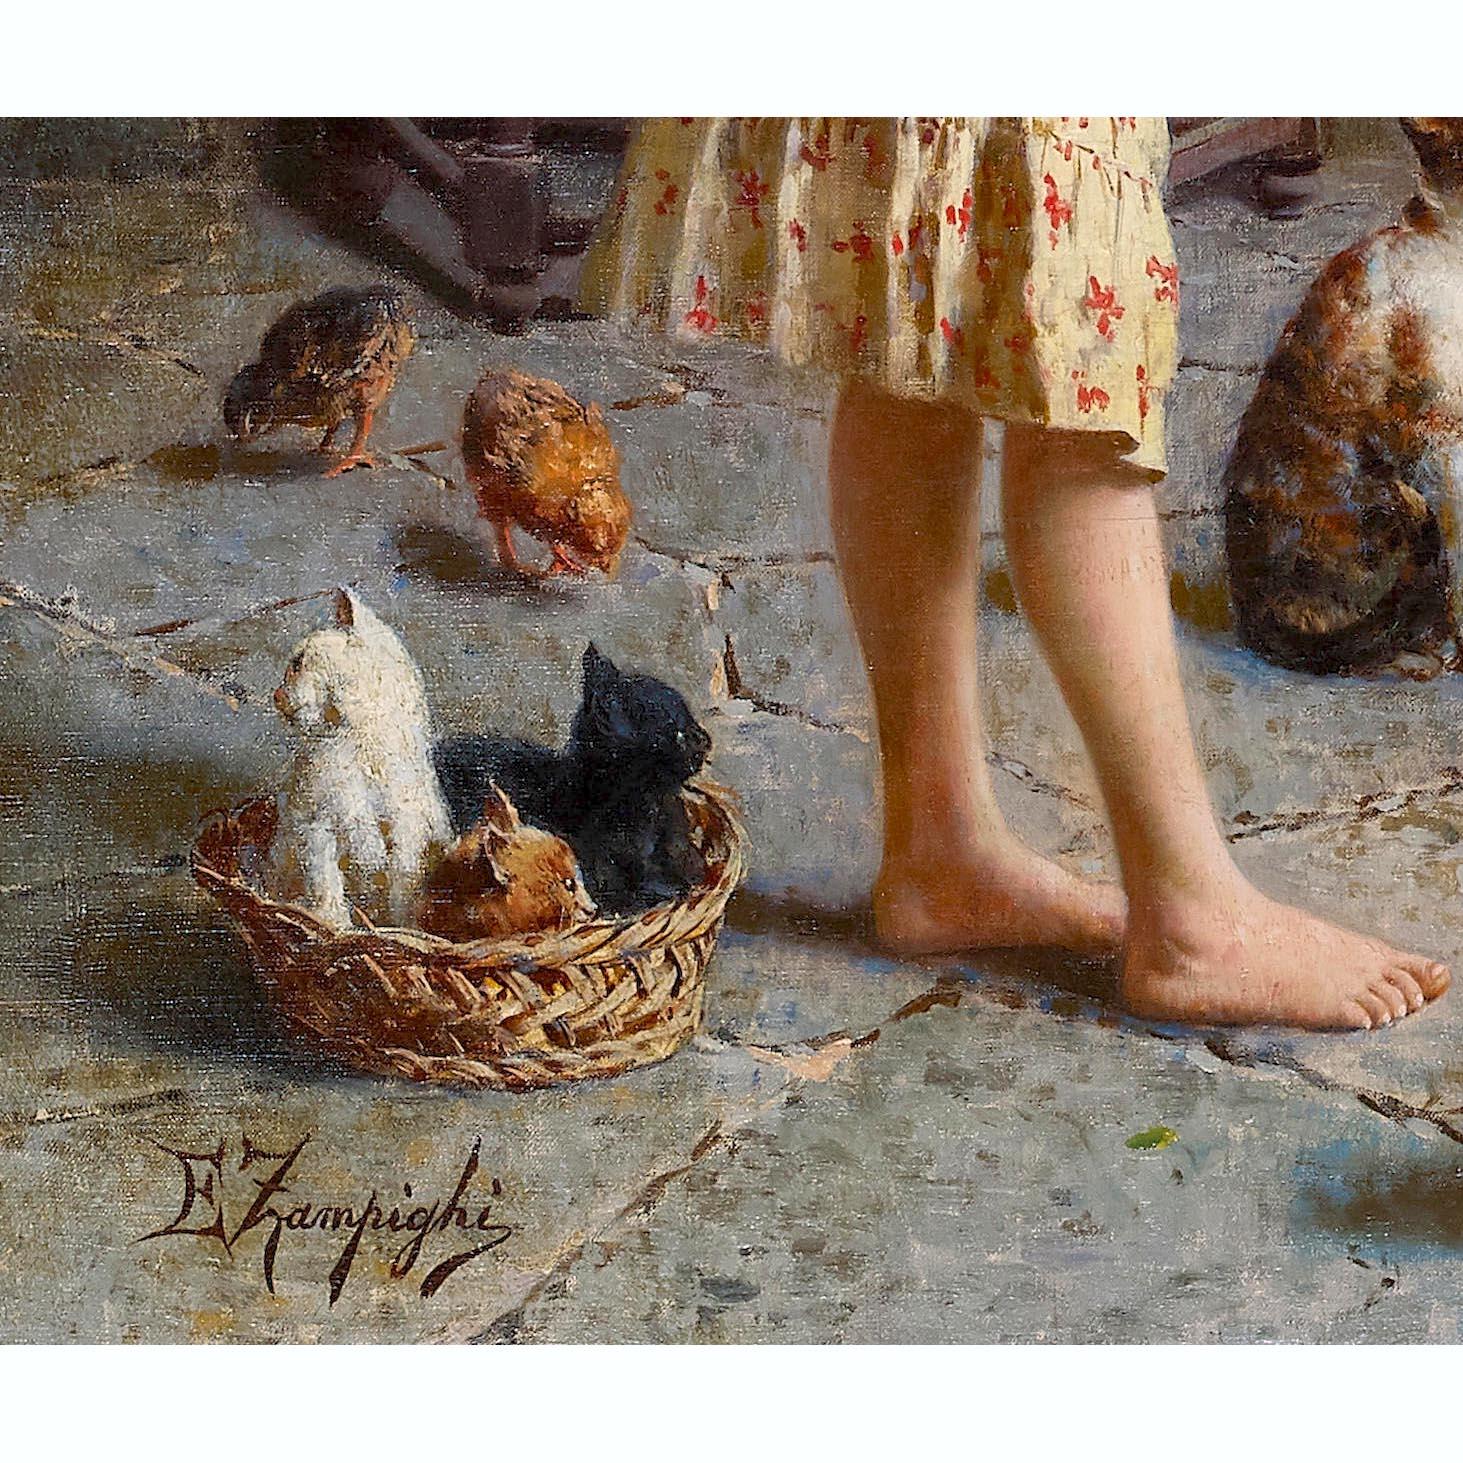 Eugenio Zampighi 'Italian, 1859-1944' 19th/20th C. Oil on Canvas 